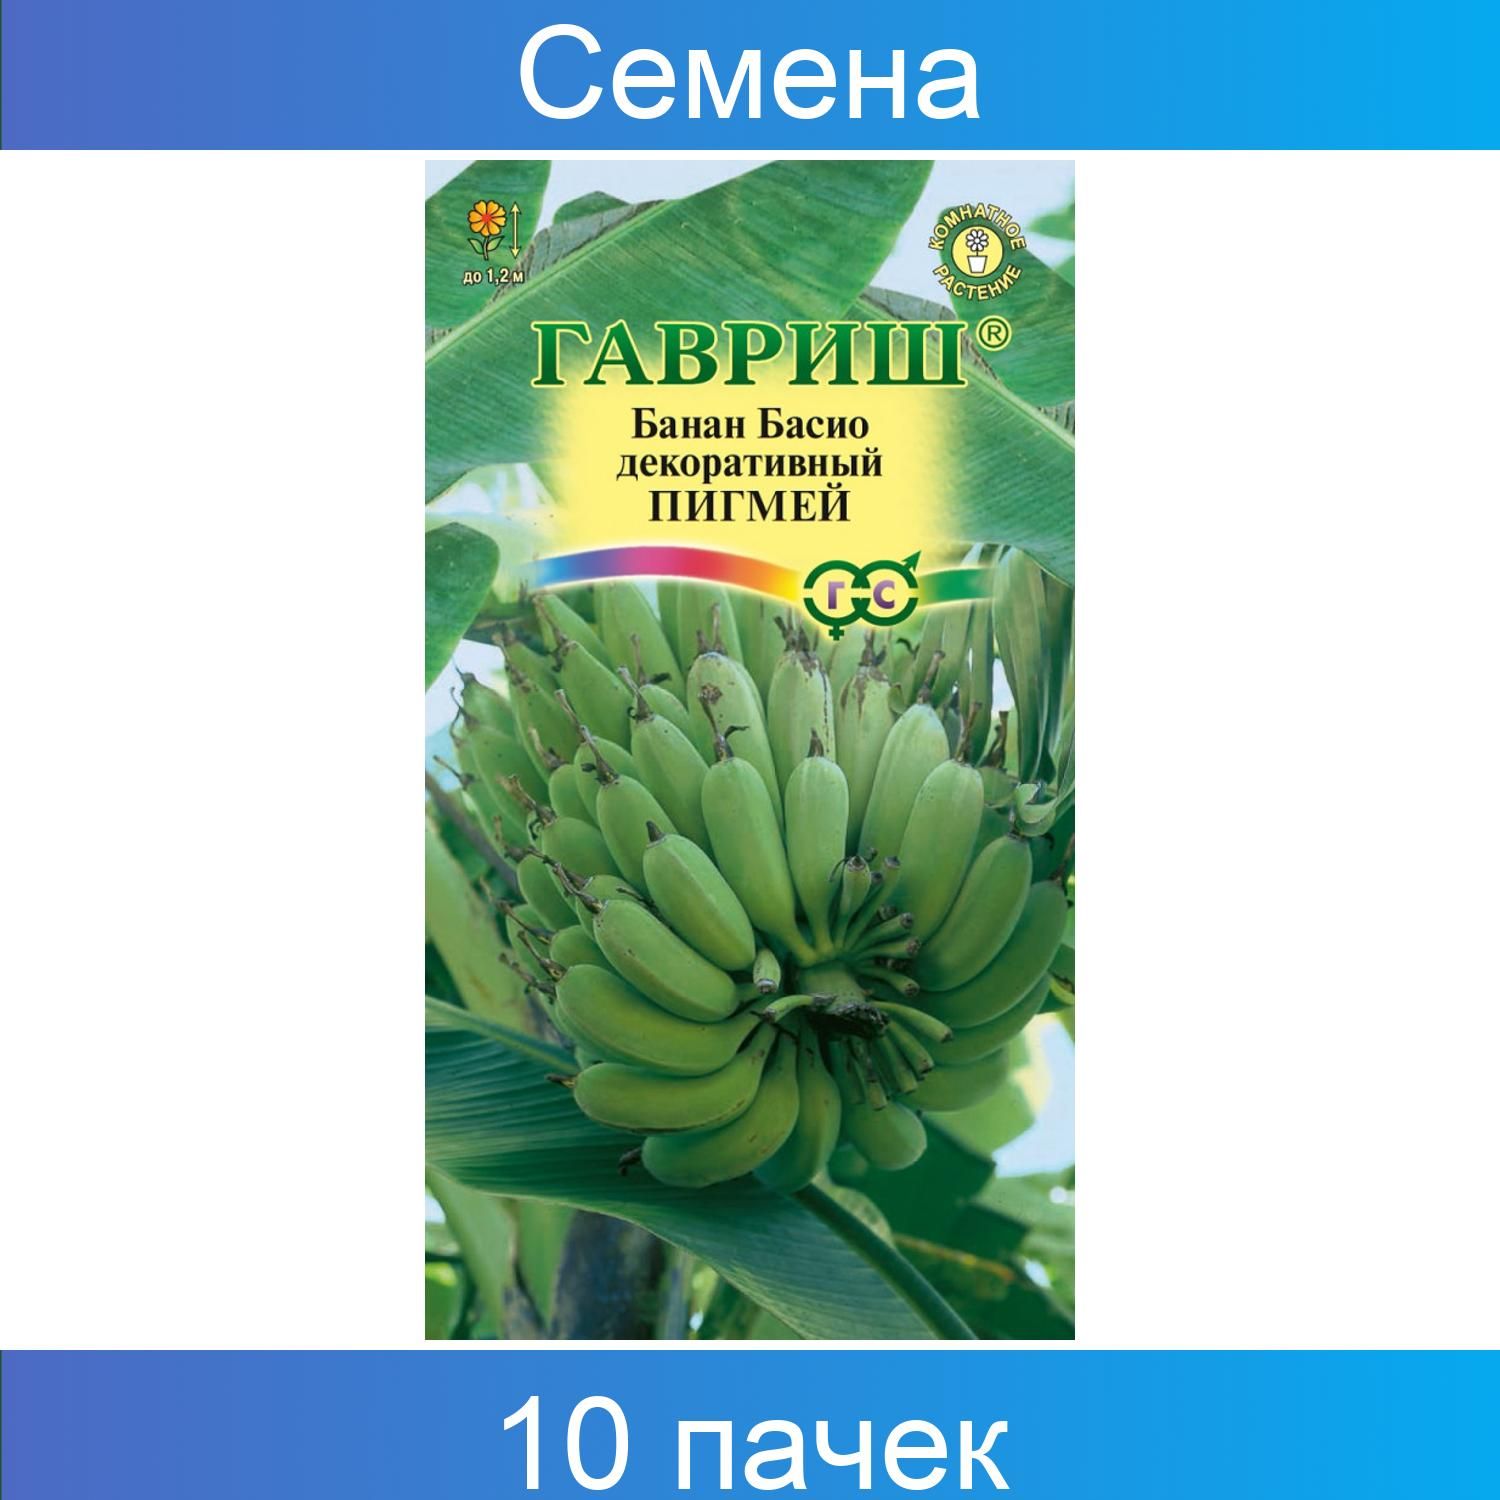 Банан Гавриш 985676 - купить по выгодным ценам в интернет-магазине OZON(840203884)